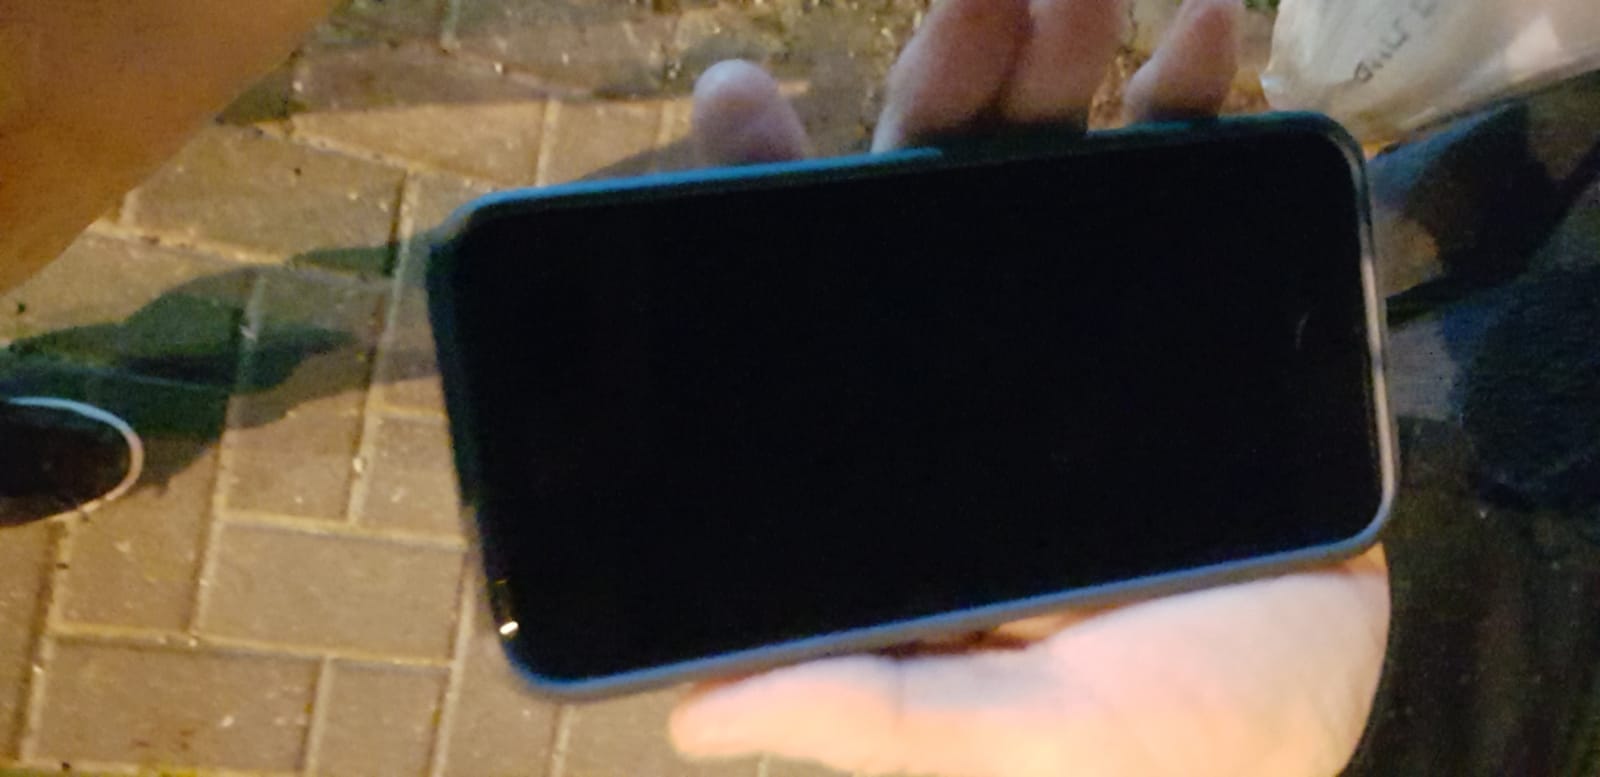 תמונה 4 ,איפון sE למכירה בתל אביב סלולרי  סמארטפונים